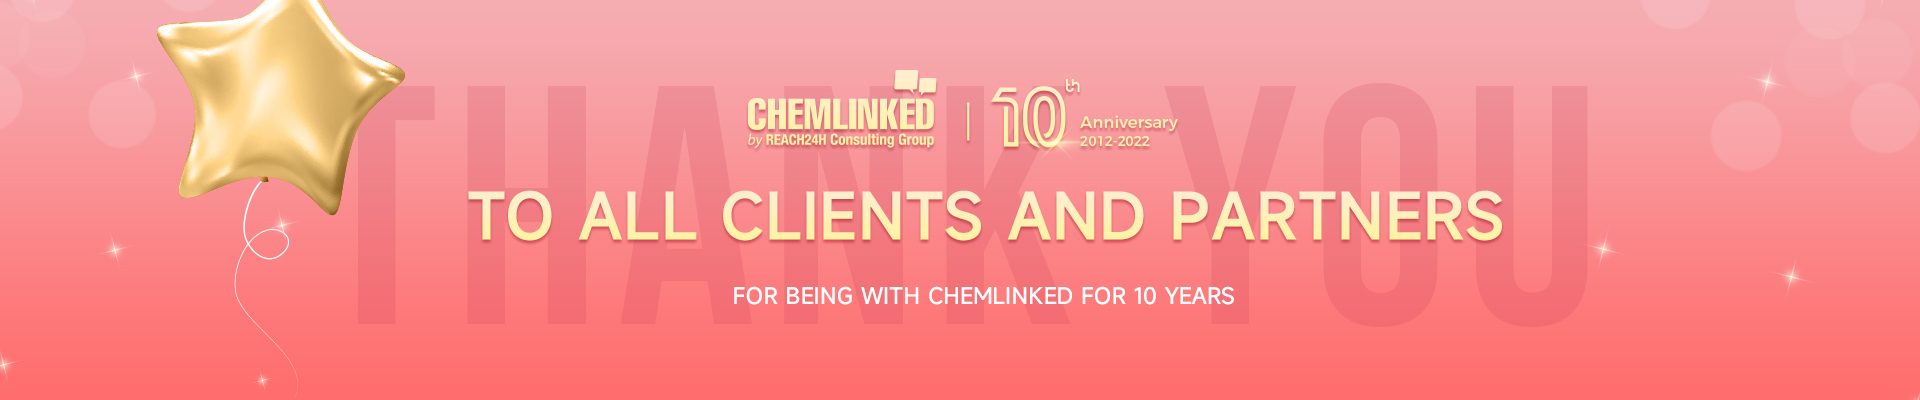 ChemLinked 10 anniversary